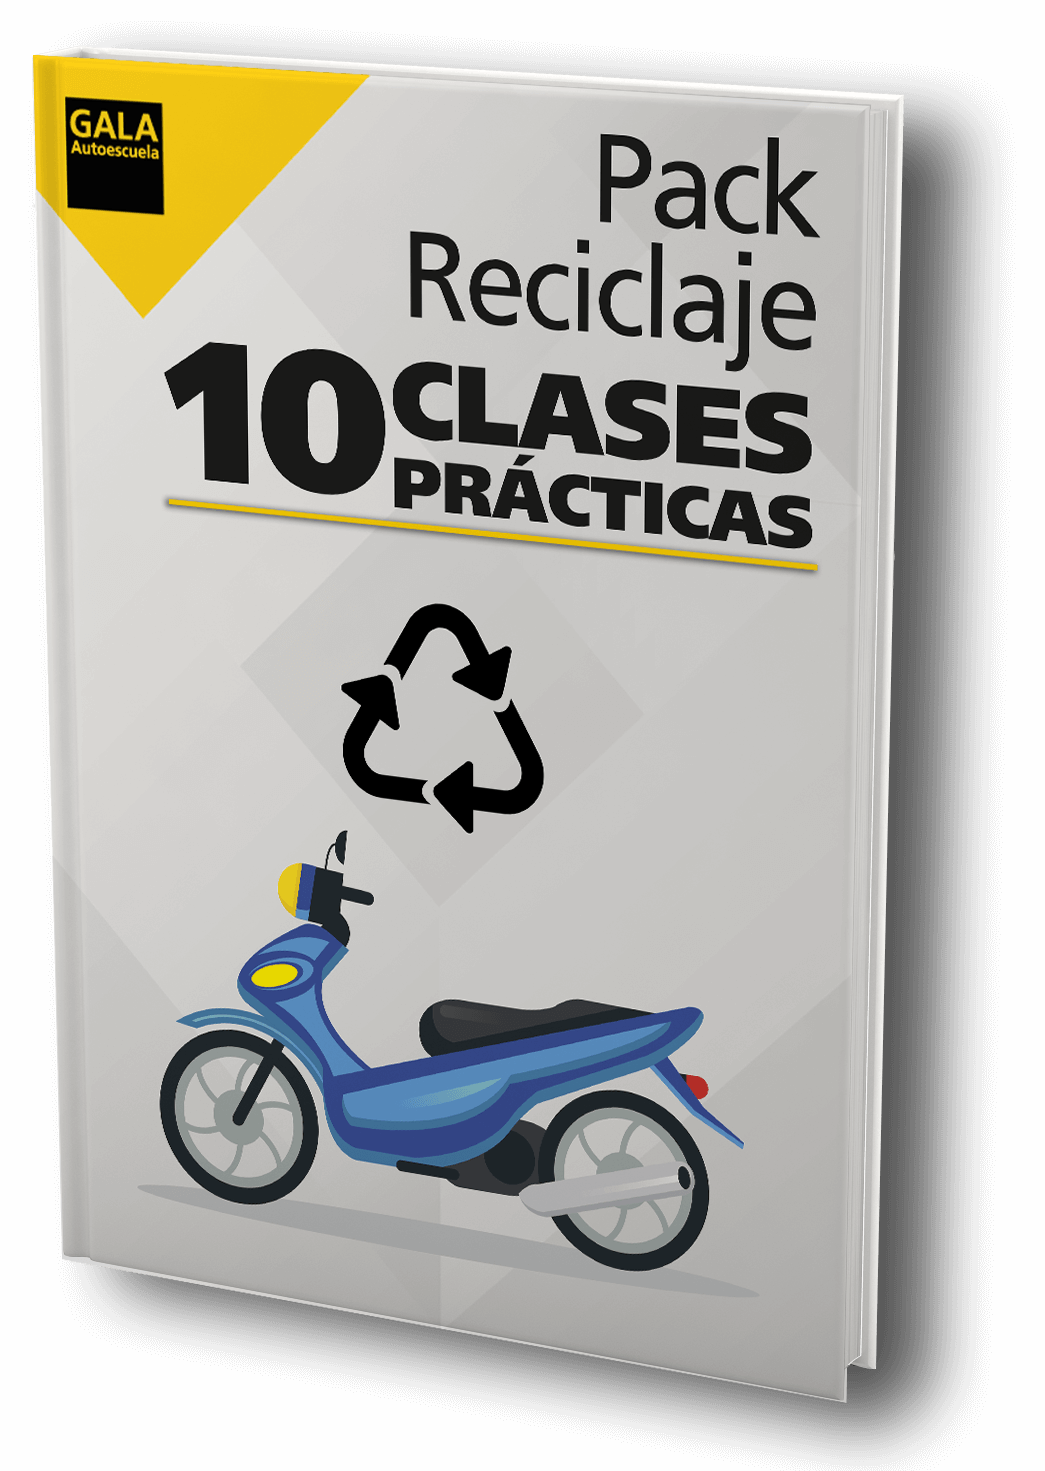 Desarmado desagüe Repulsión Pack Reciclaje 10 Clases Prácticas de Motos en Madrid- Autoescuela Gala